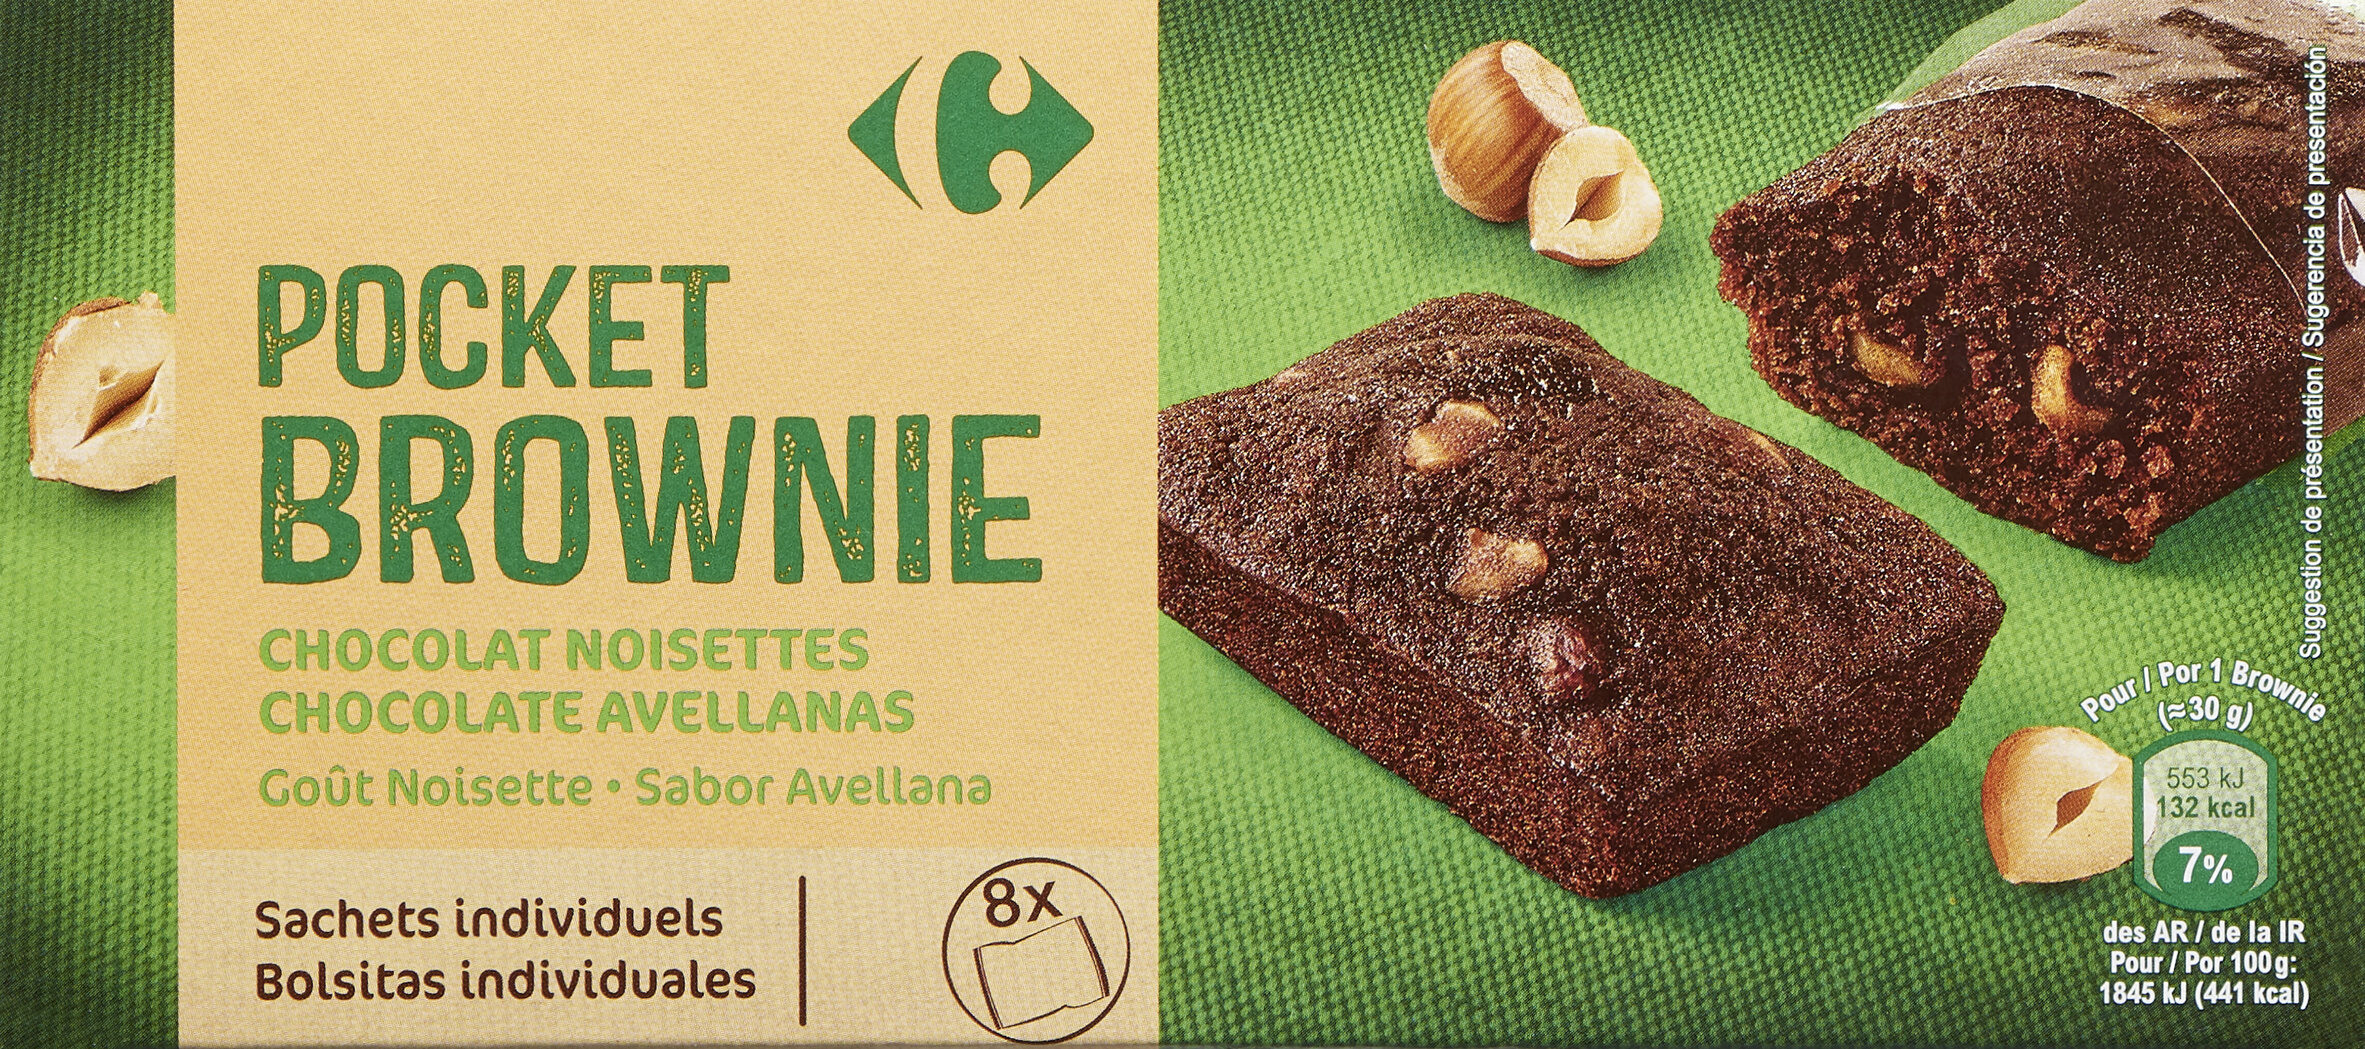 Brownie pocket chocolat et noisettes - Produit - fr